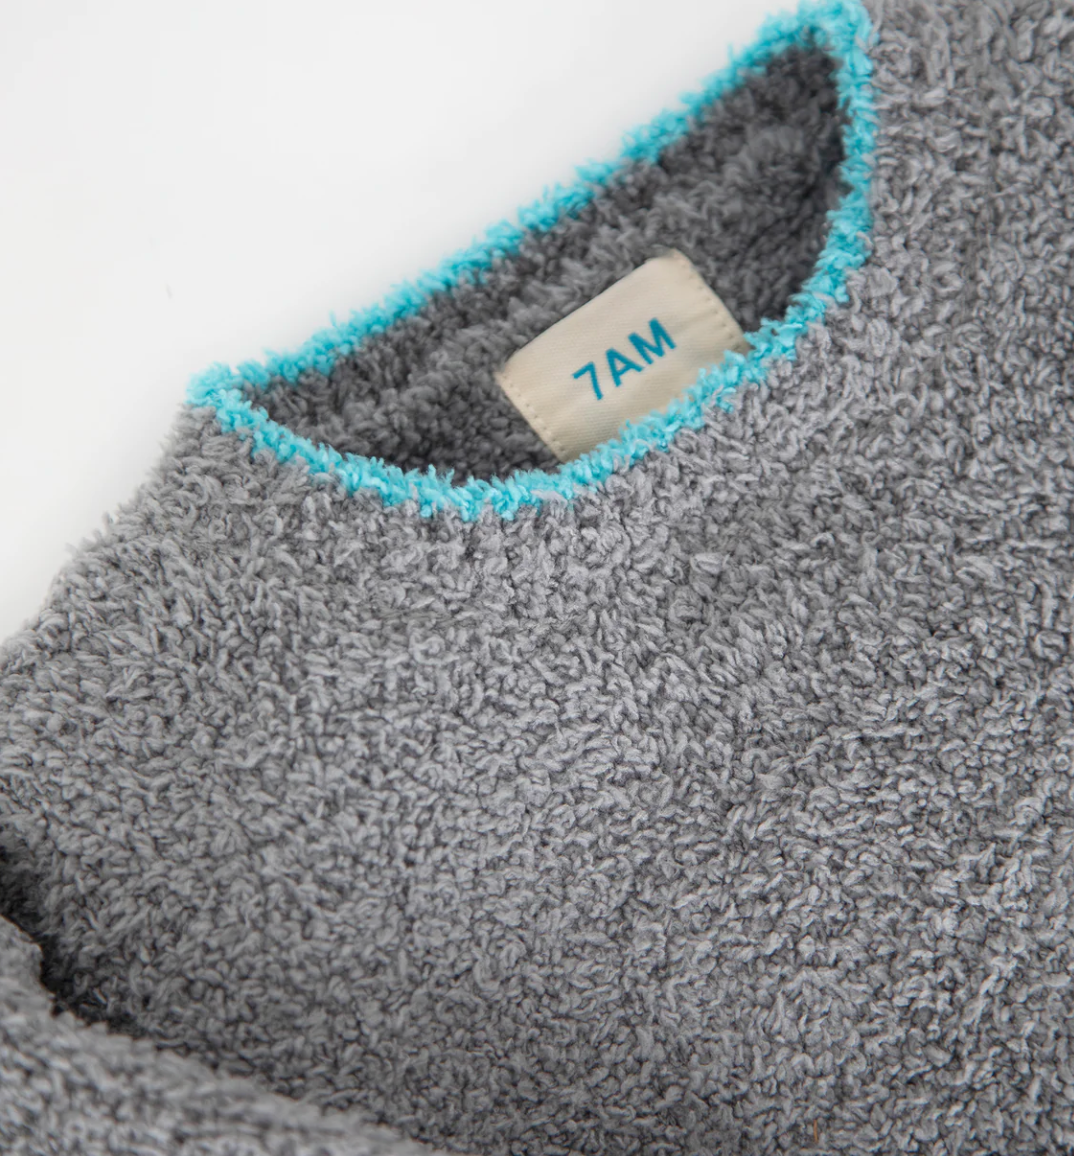 Gris Boxy Sweater - Fuzzy